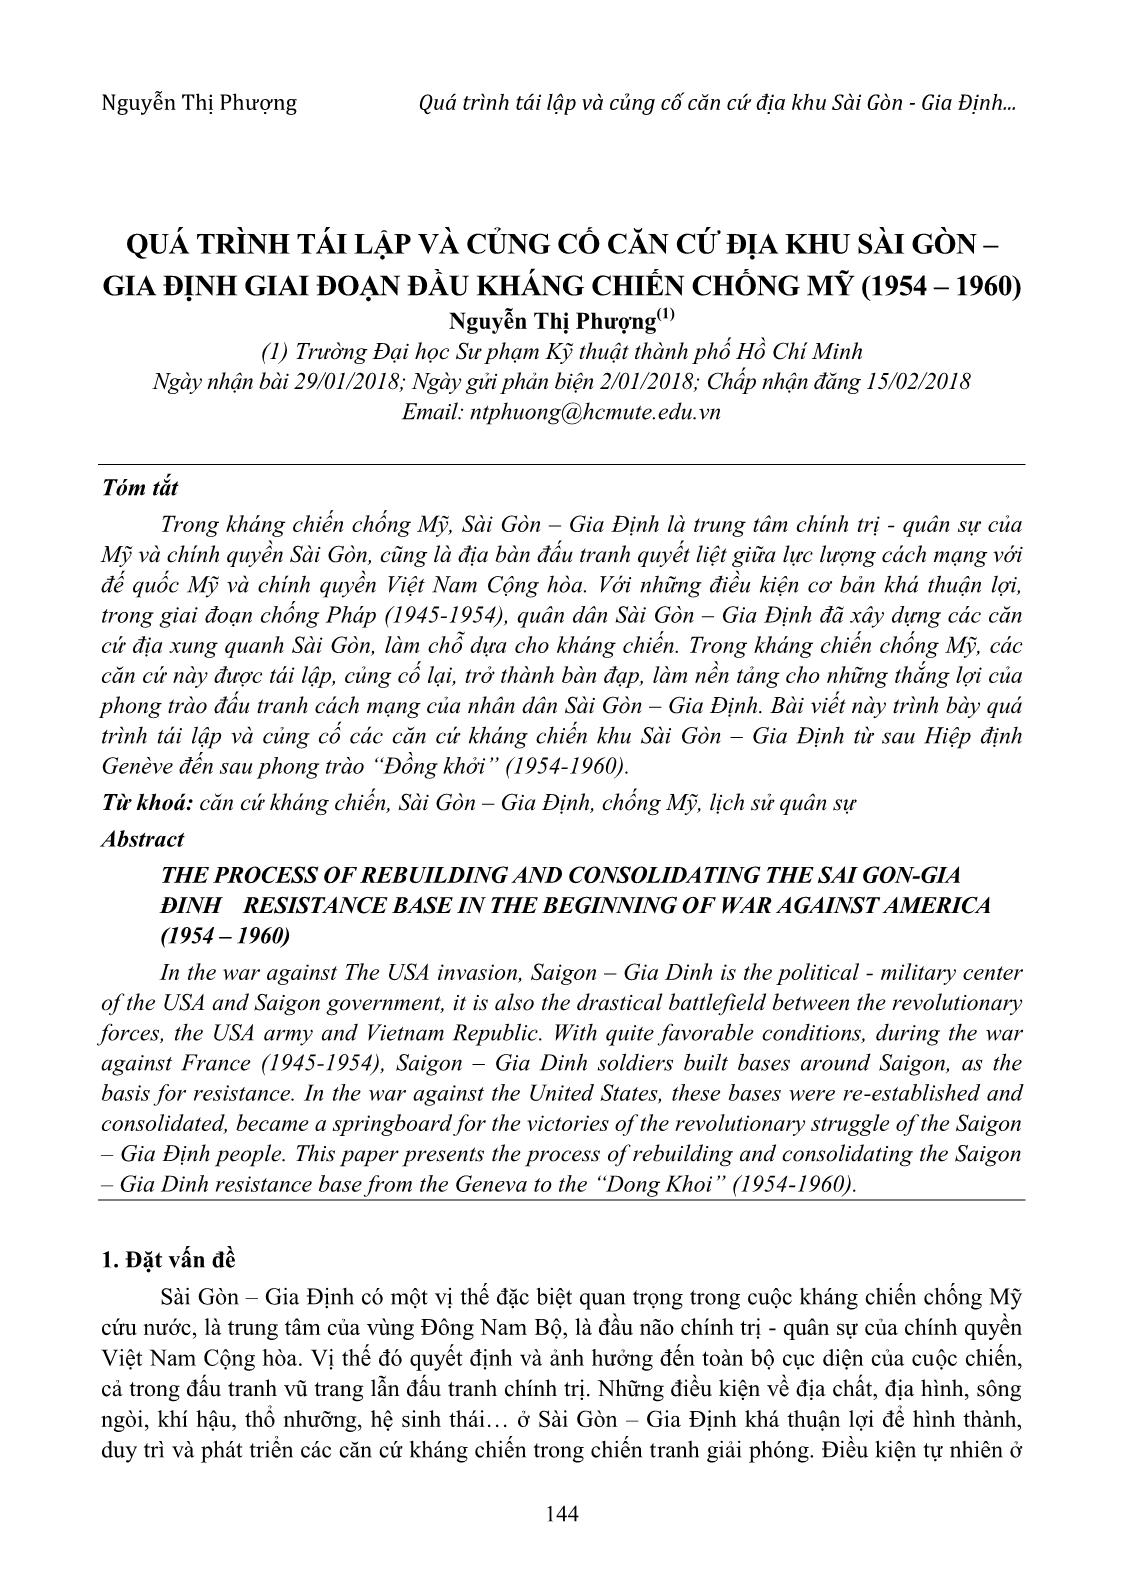 Quá trình tái lập và củng cố căn cứ địa khu Sài Gòn – Gia Định giai đoạn đầu kháng chiến chống Mỹ (1954 – 1960) trang 1